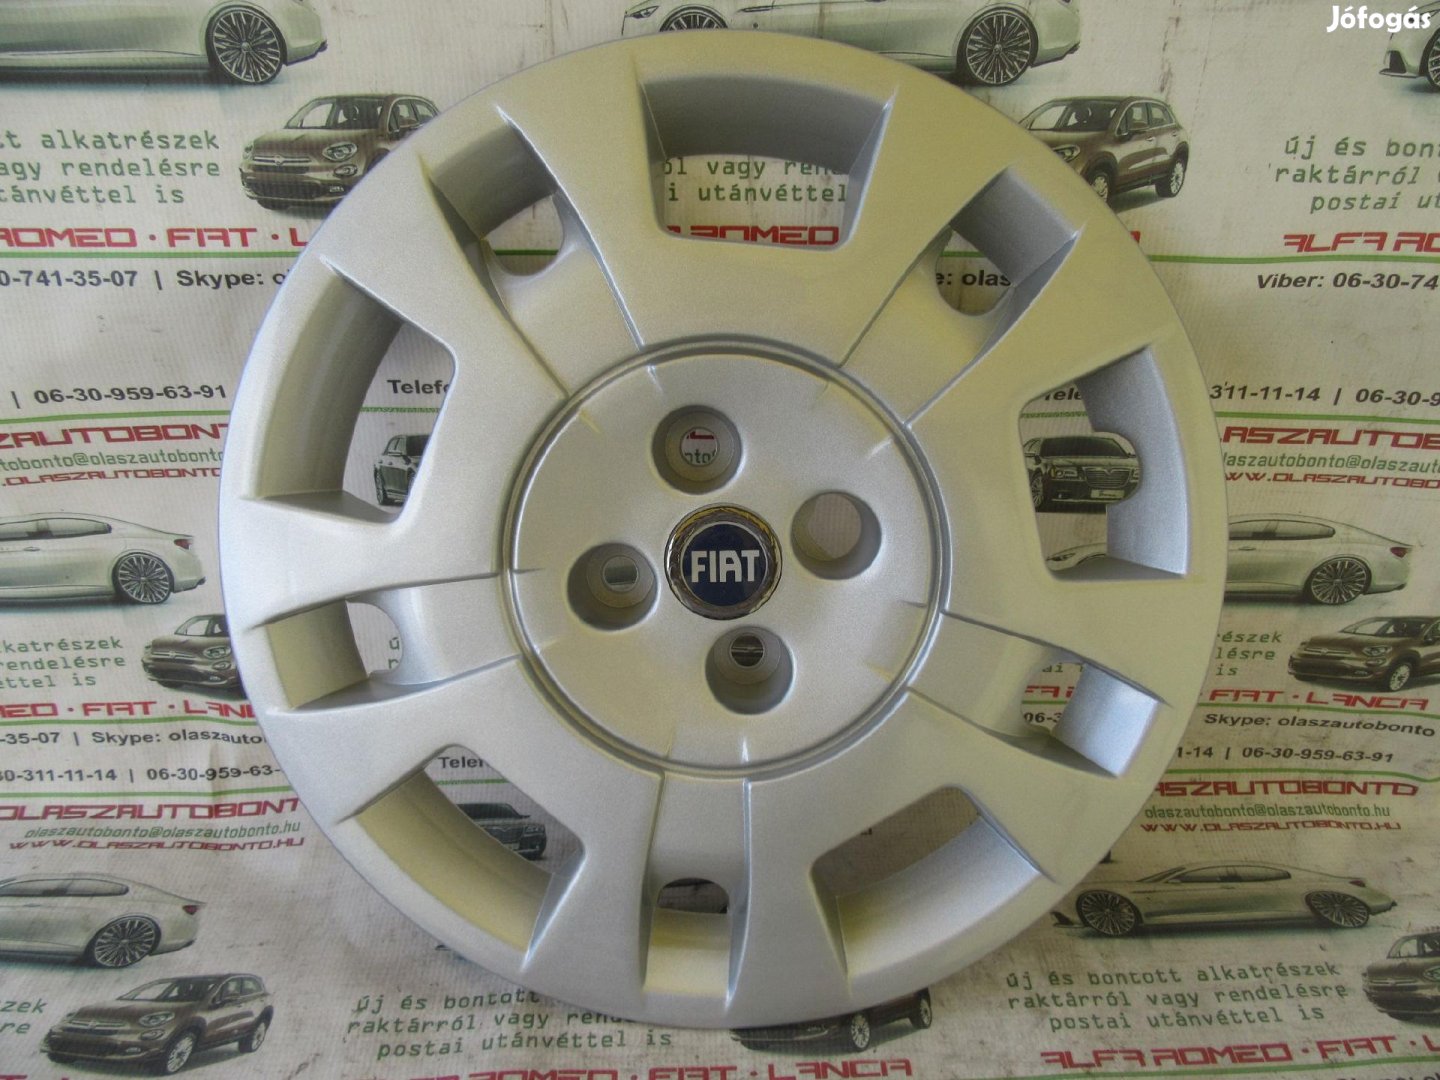 Fiat Idea 15" , 51718117 számú új dísztárcsa